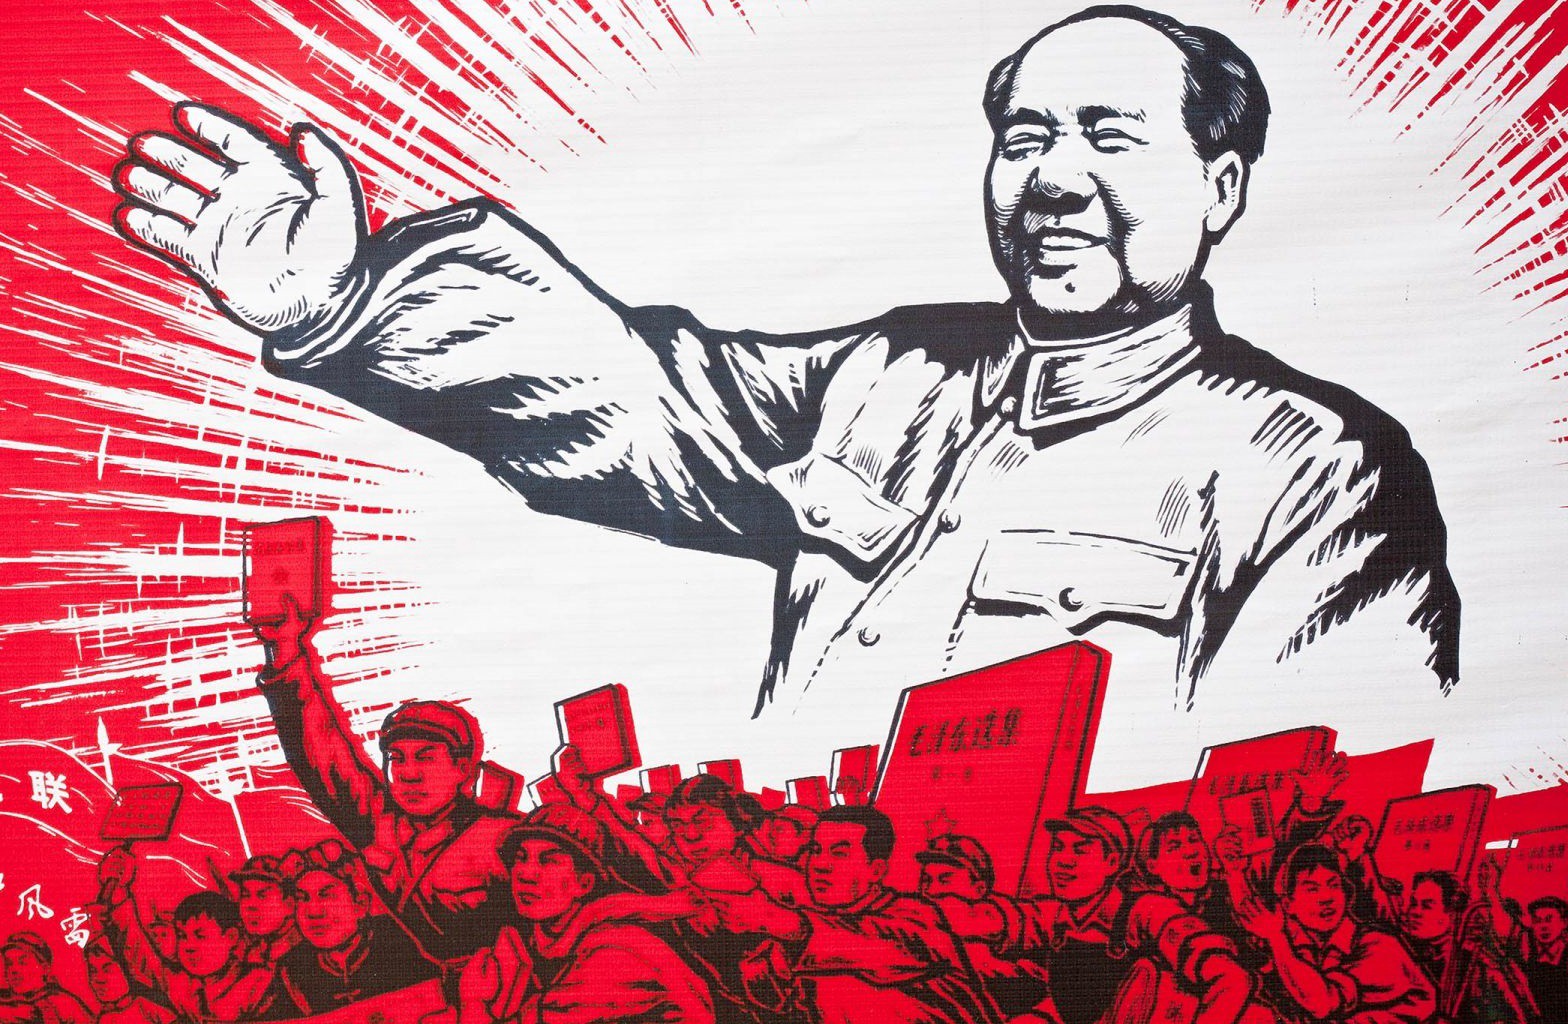 هفتادمین سالگرد تاسیس جمهوری خلق چین توسط حزب کمونیست این کشور روزی بسیار مهم است که هر ساله در اول ماه اکتبر به طور گسترده جشن گرفته می شود.